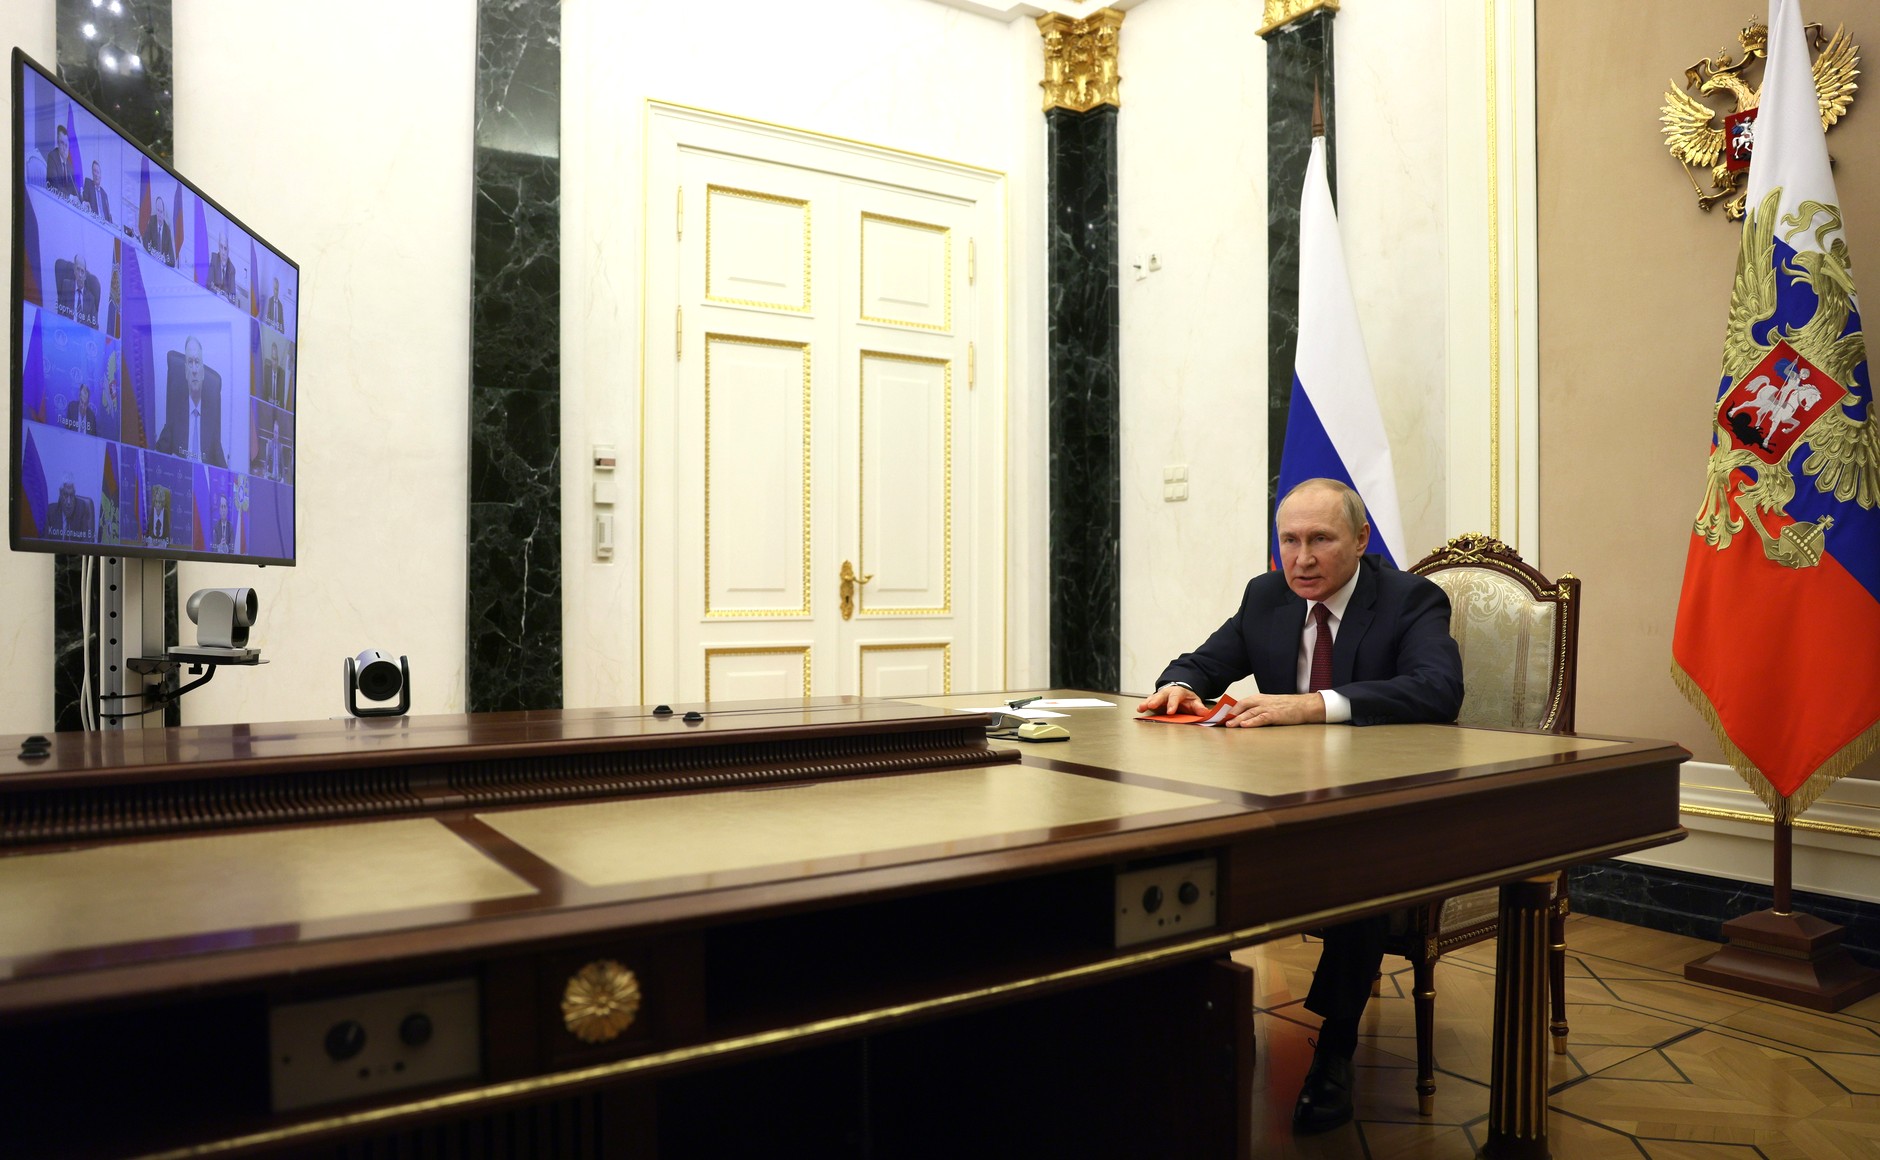 Совещание Владимира Путина с постоянными членами Совета безопасности, 29 сентября 2022 года. Фото © Kremlin.ru